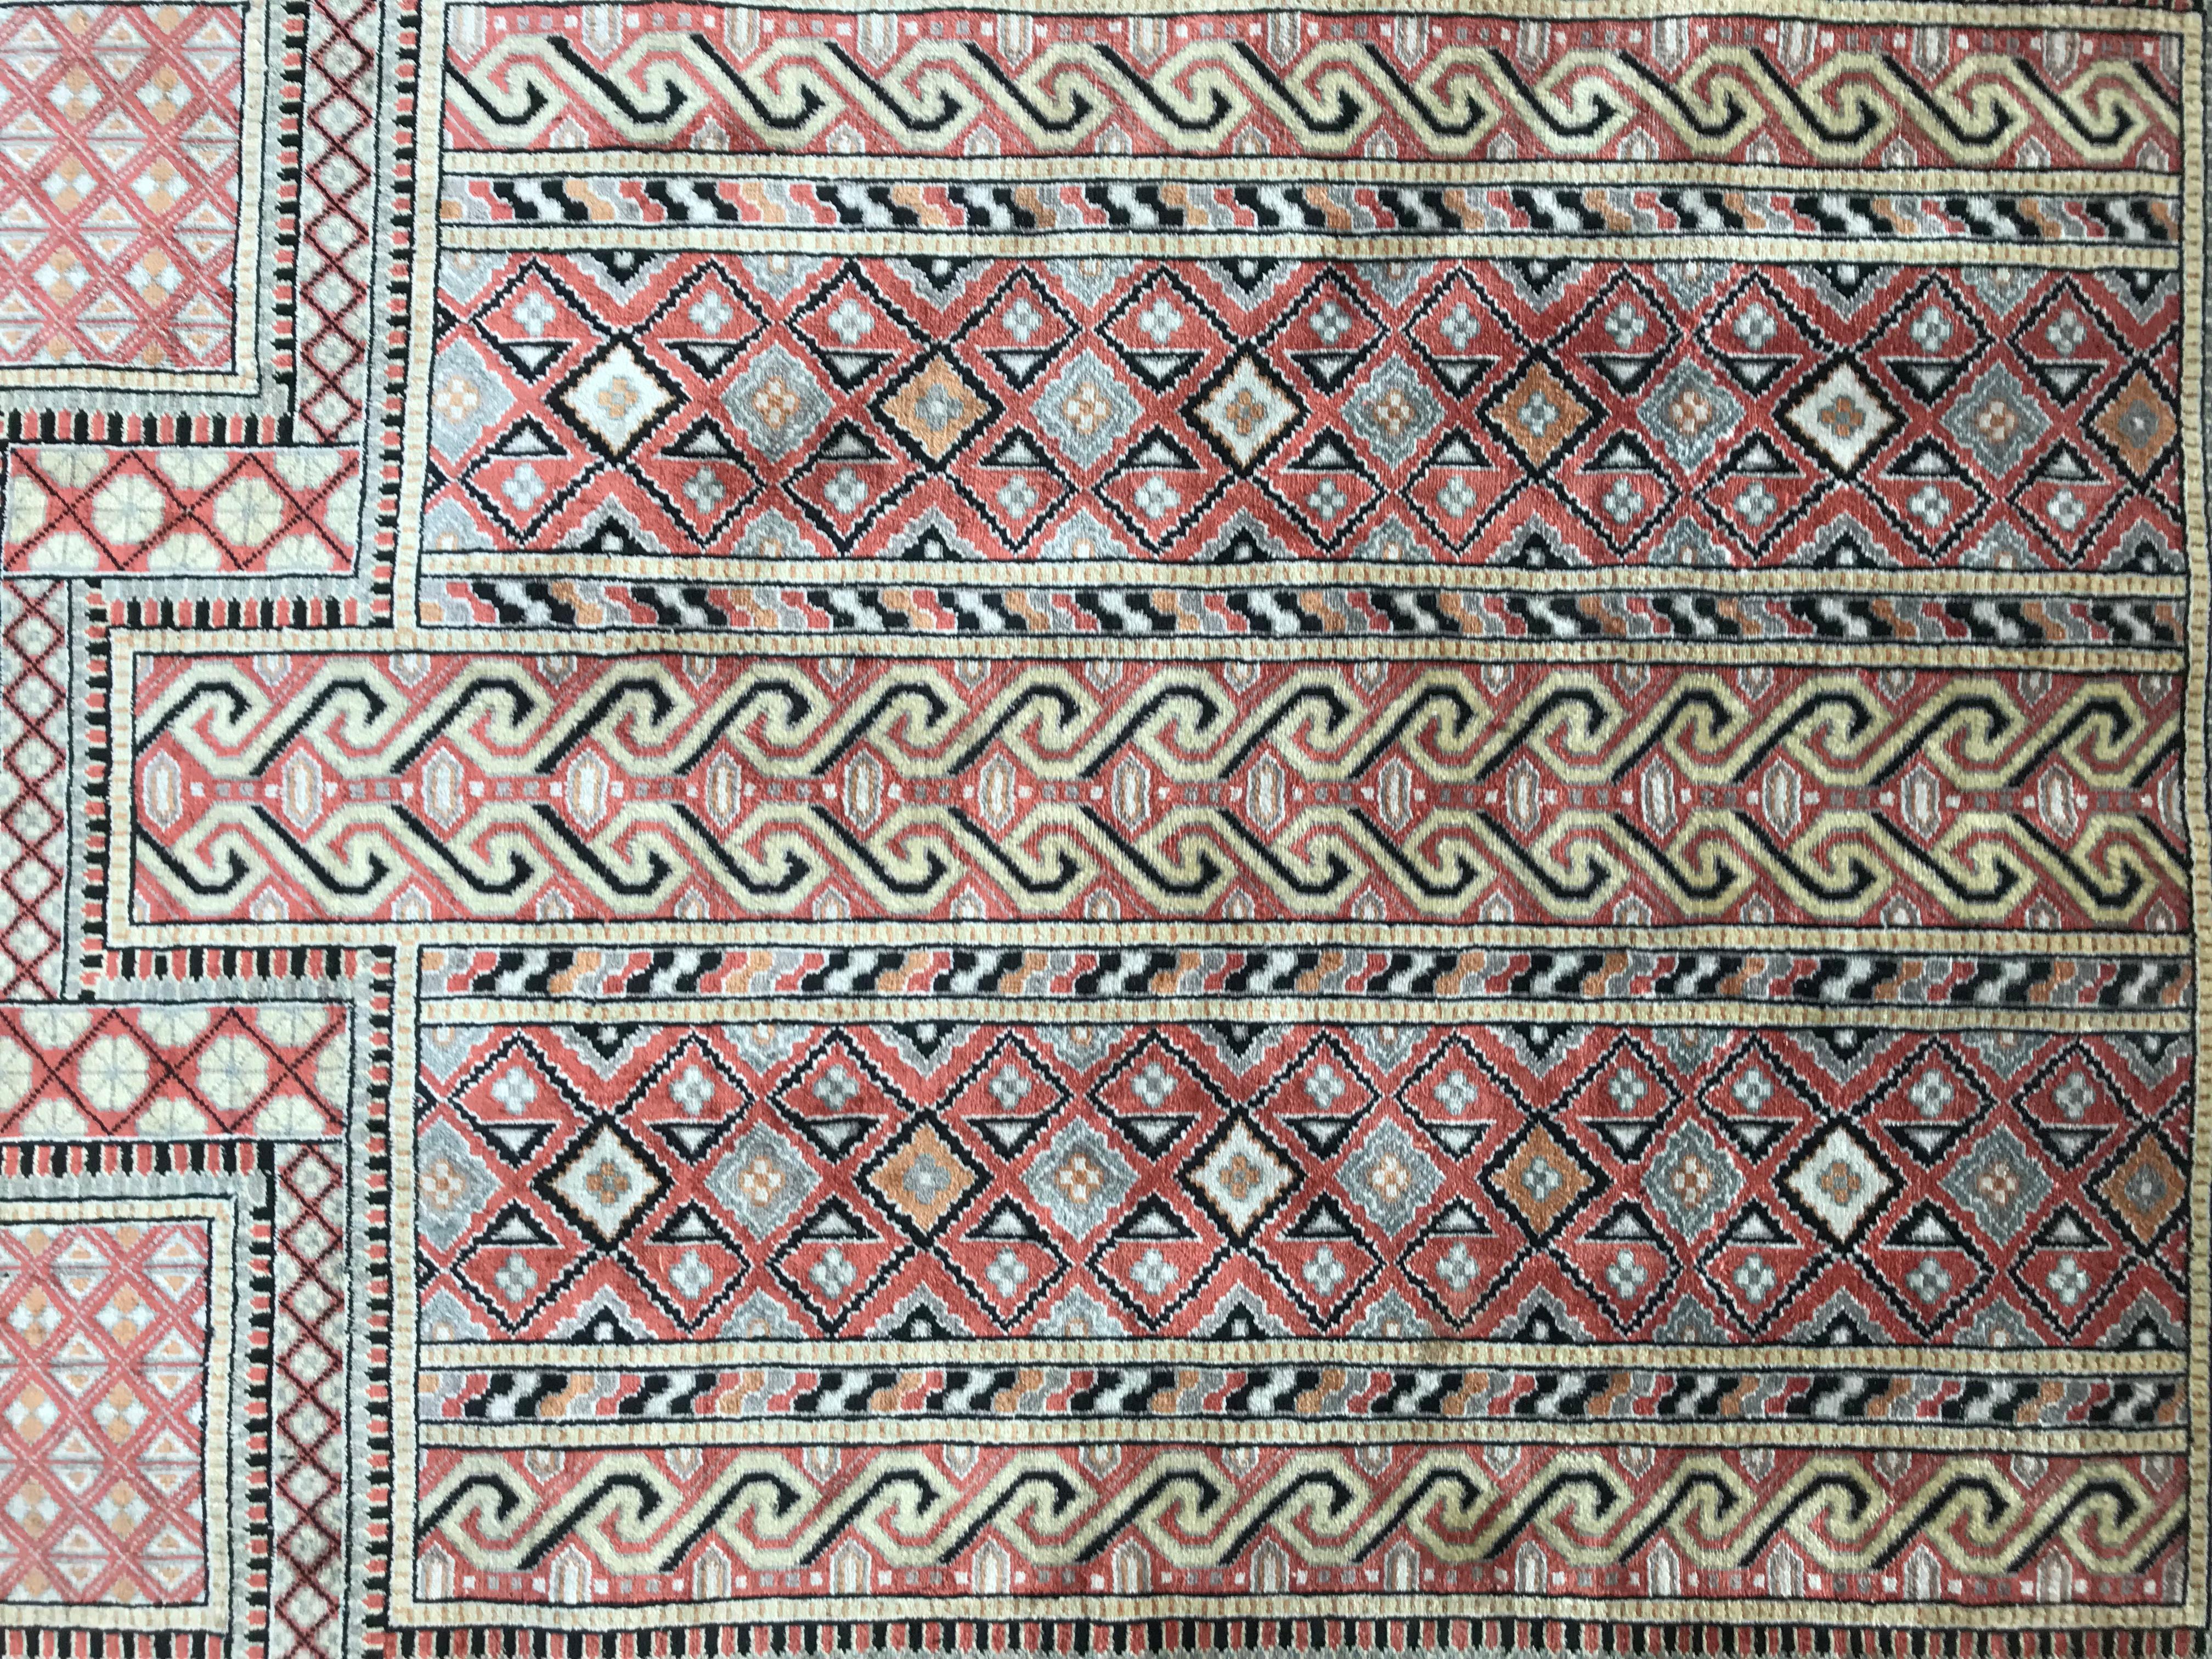 Nette kleine Seide türkischen Teppich, mit schönen geometrischen Design mit Mihrab und schöne Farben mit beige, rosa, gelb und schwarz, fein Hand mit Seidensamt auf Seide Grundlage geknüpft. Größe: 2ft 0.02inch x 2ft 11.44inch.